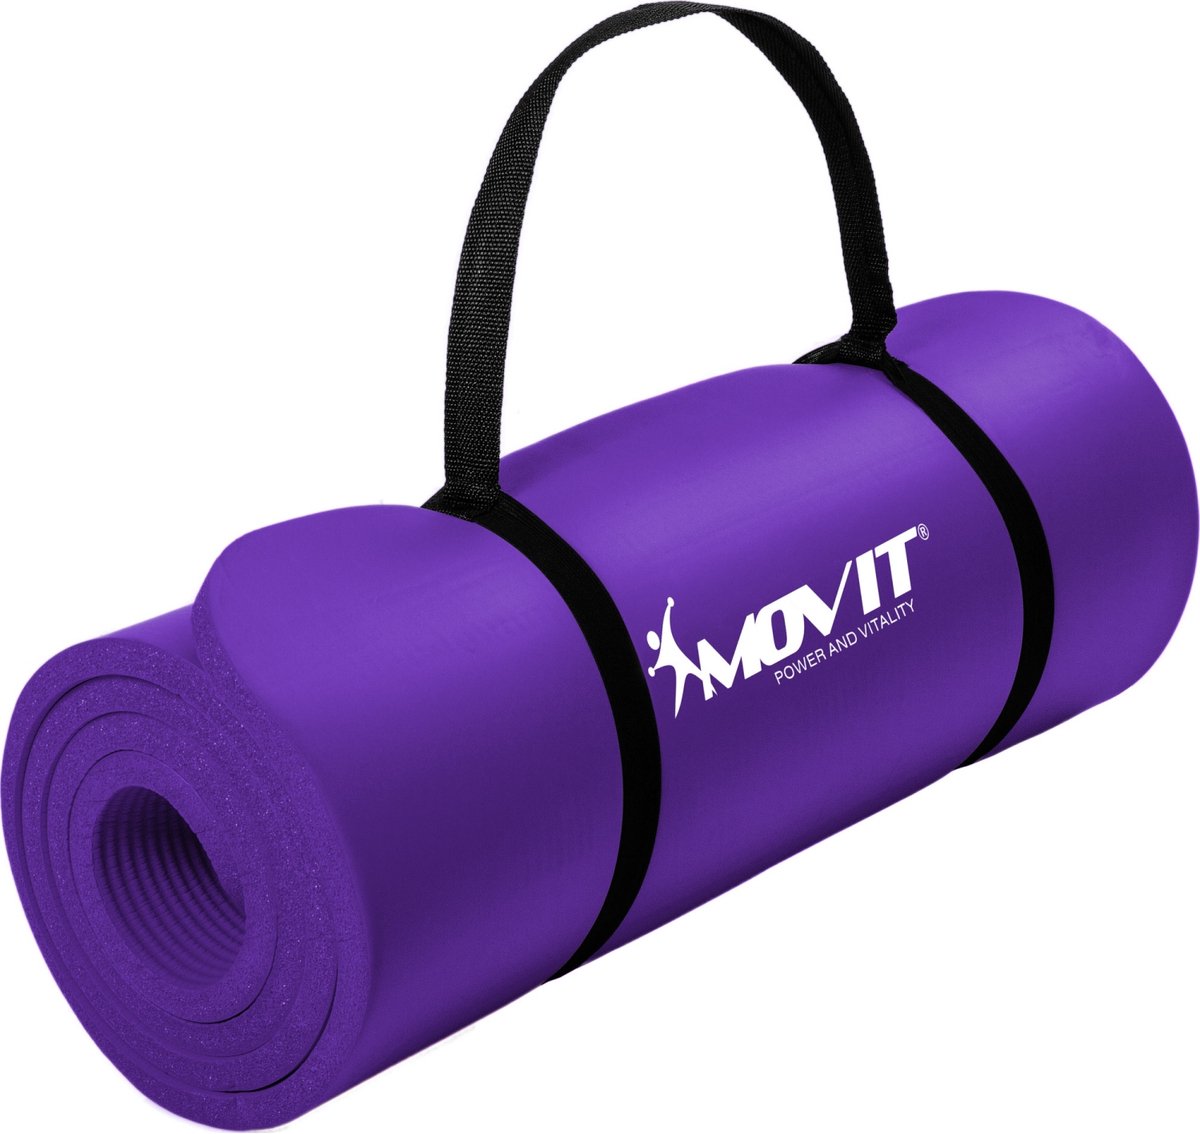 Yoga mat - Yogamat - Fitness mat - Sport mat - Fitness matje - Pilates mat - Oprolbaar - Inclusief handgreep - 183 x 60 x 1 cm - Paars